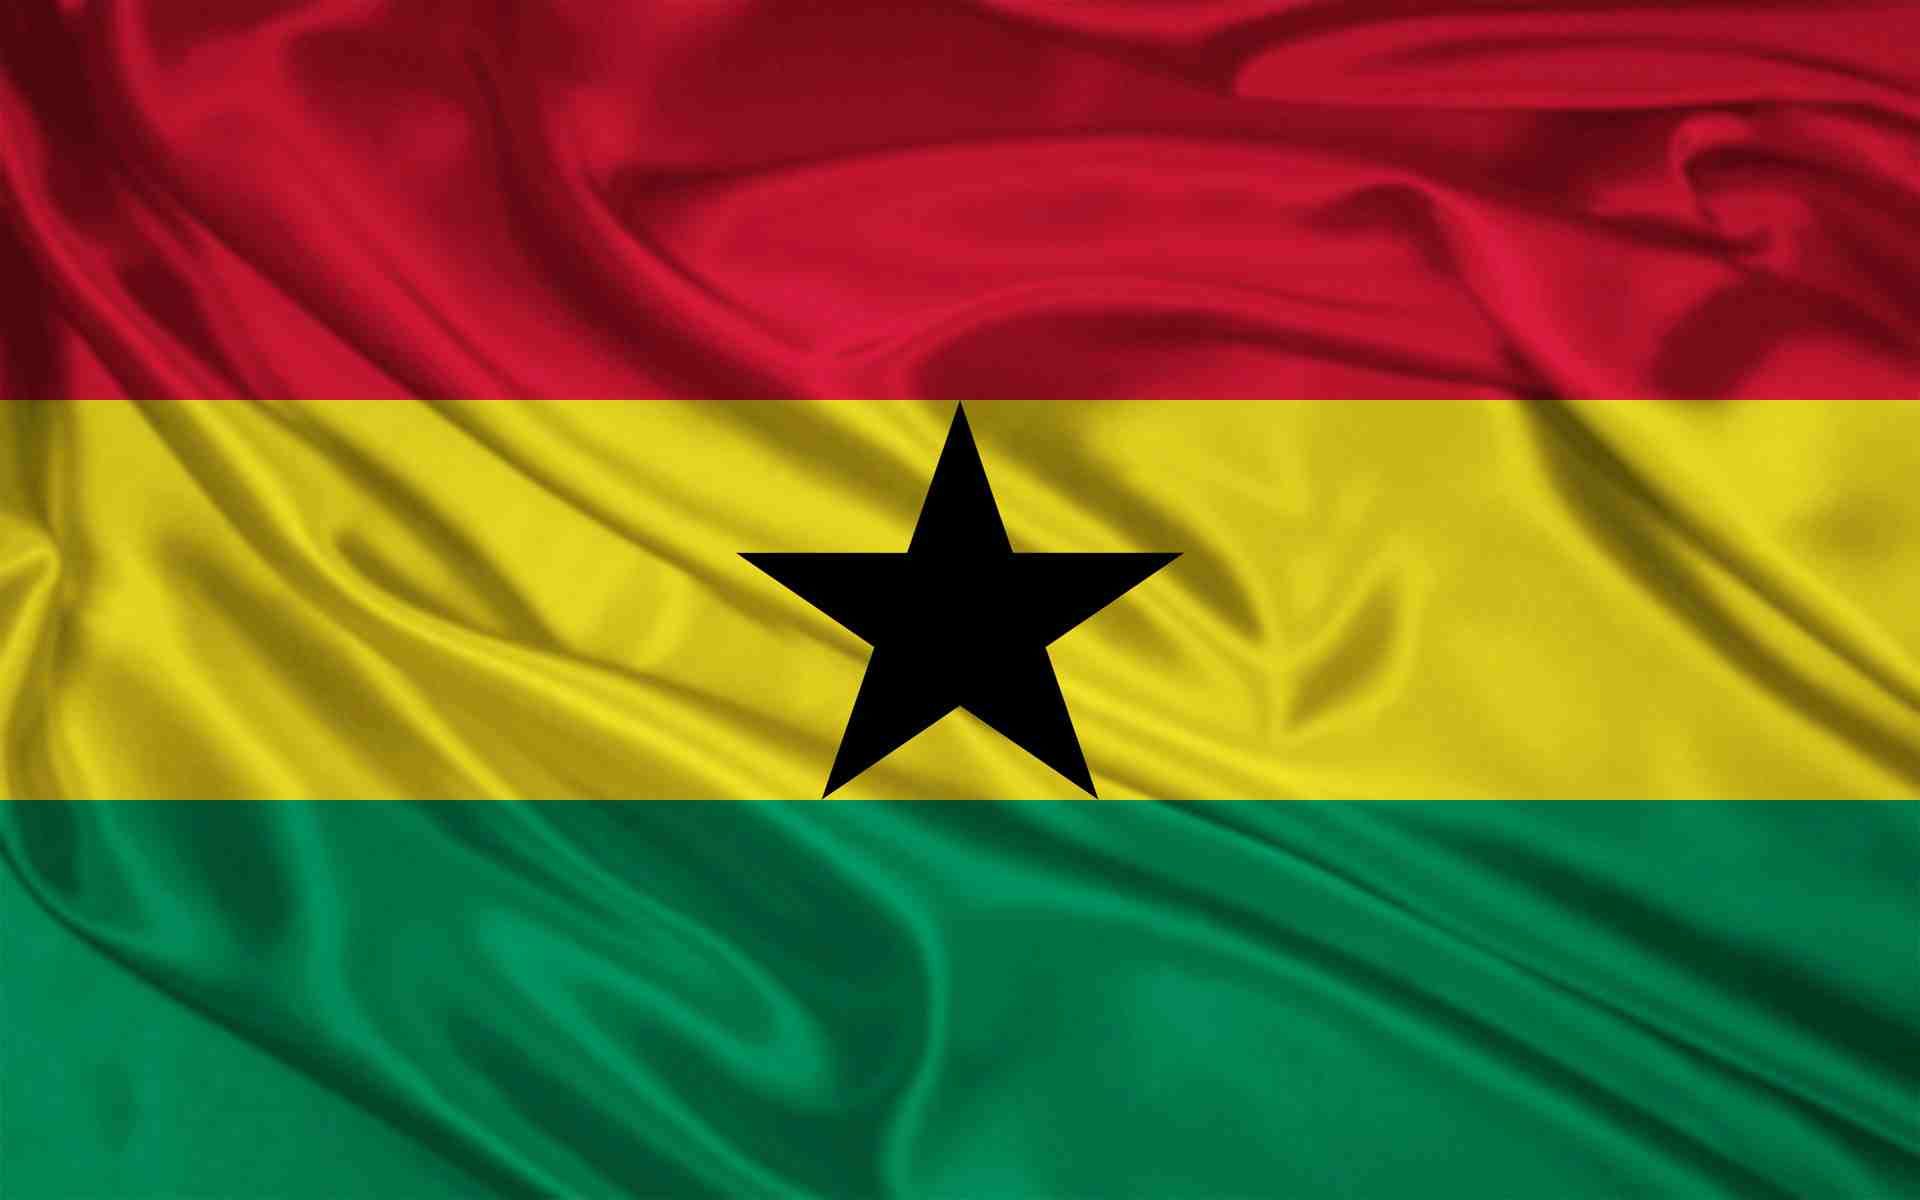 Ghana Flag Image. Ghana flag, Ghana, Flag